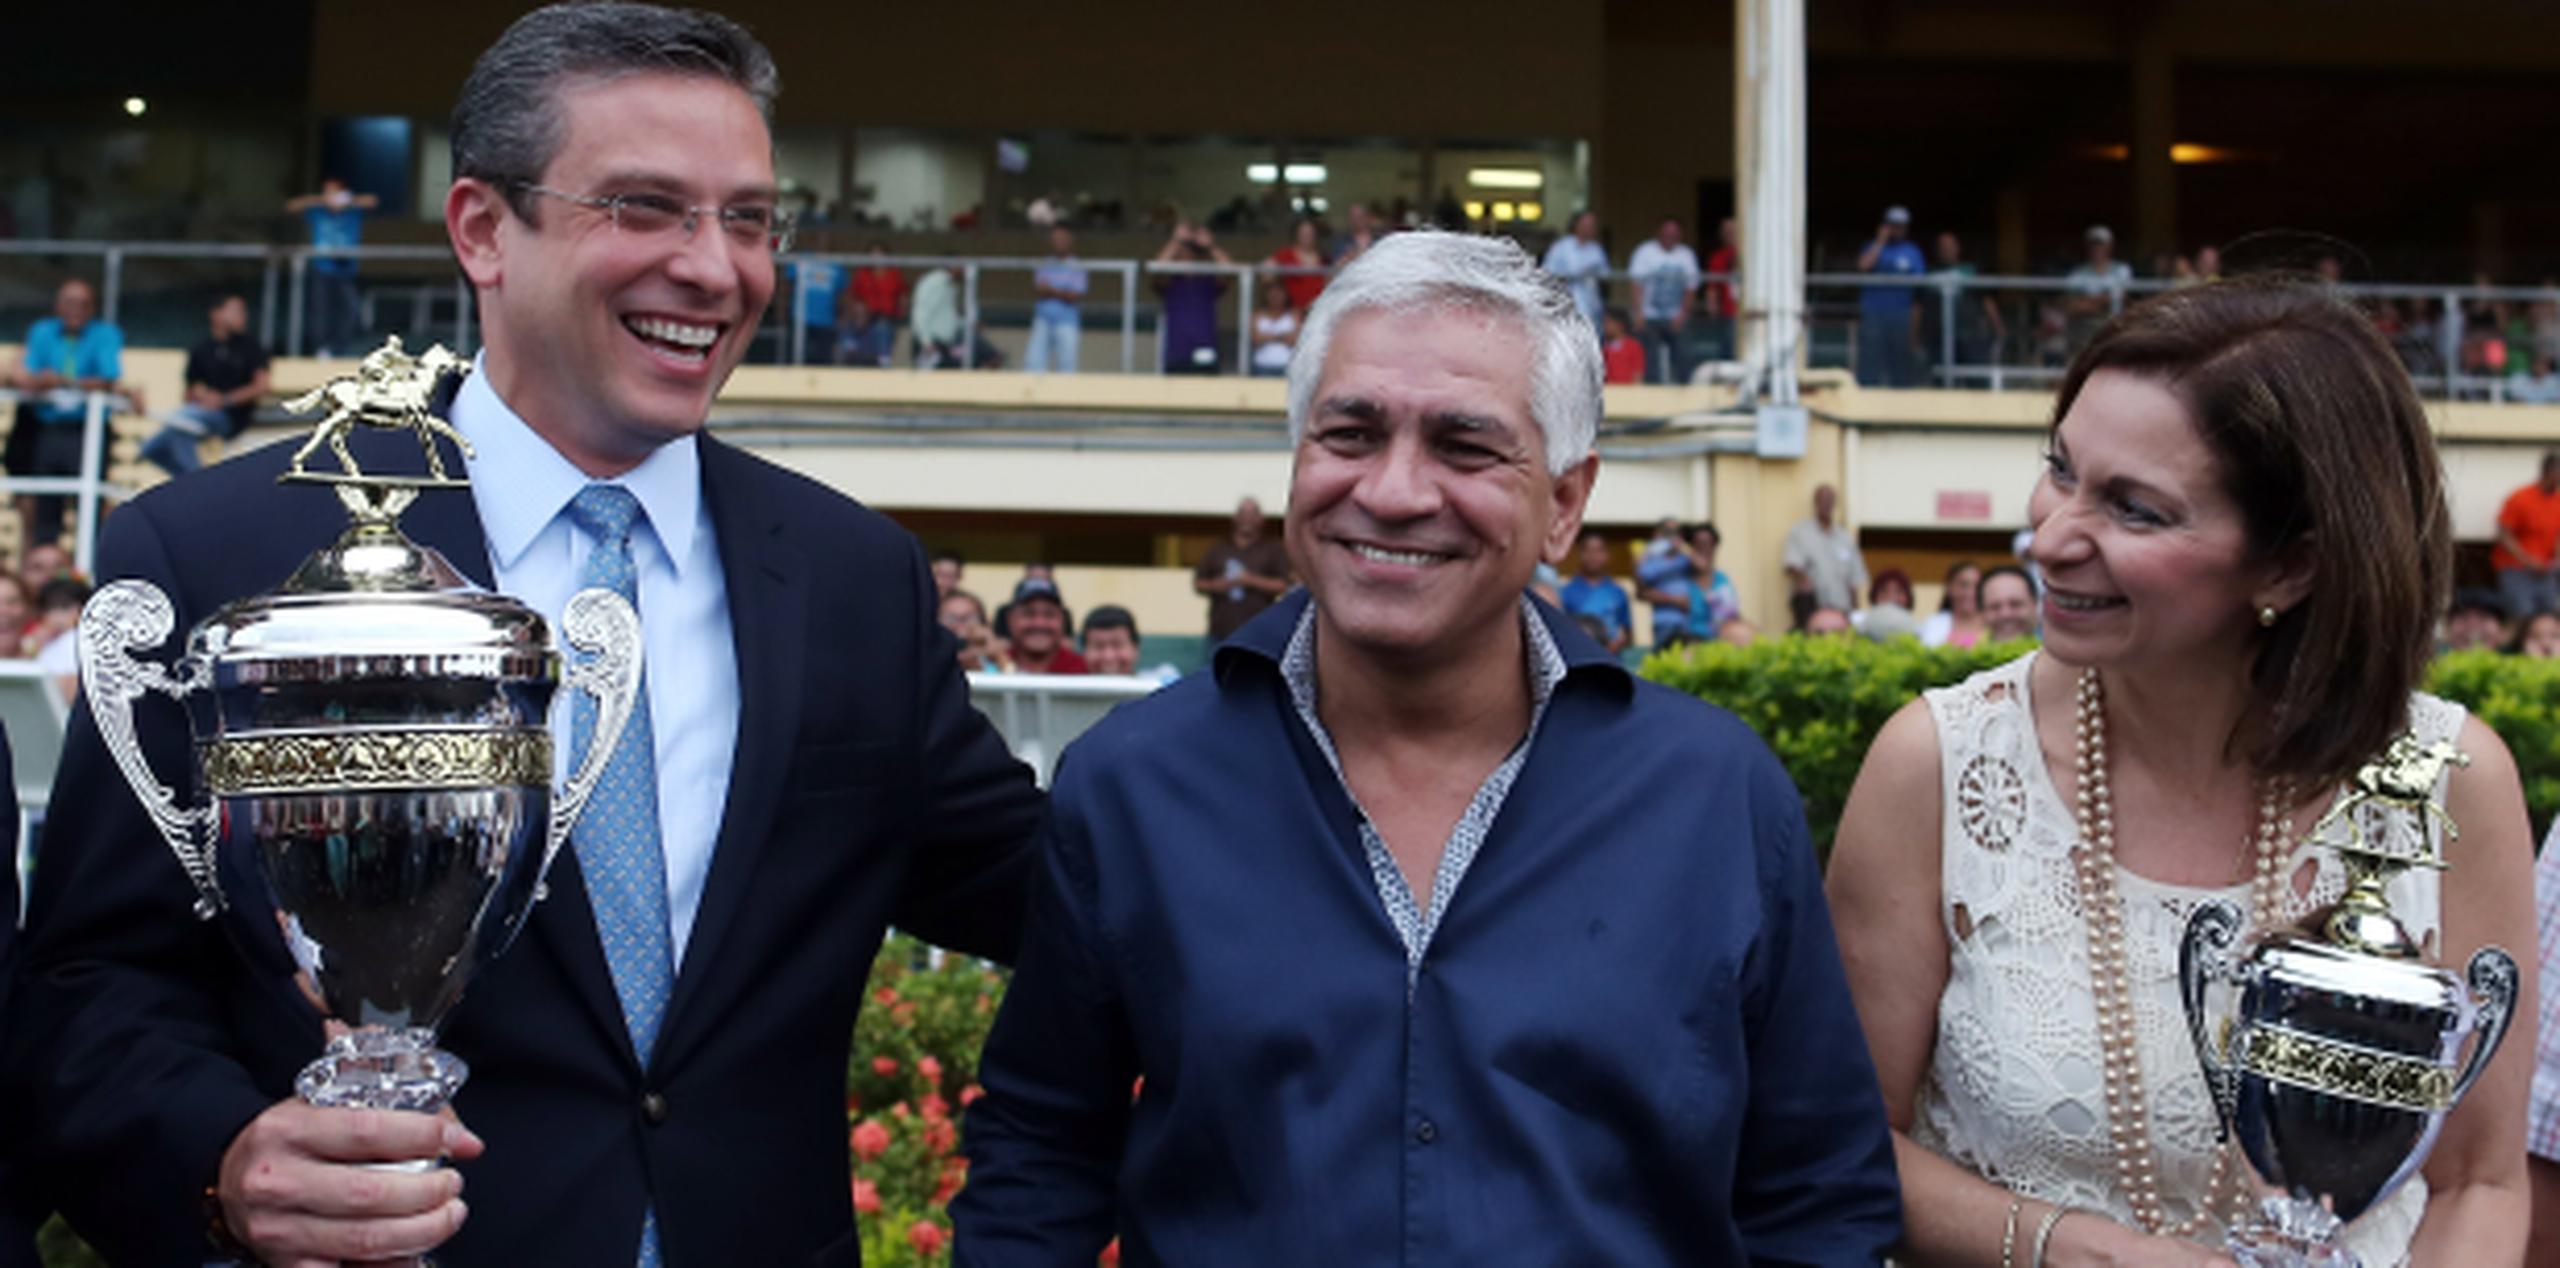 Un sonreído García Padilla le entregó la Copa Gobernador a Mundo Ríos, quien recibió el premio también con una sonrisa “de esquina a esquina”. (jose.reyes@gfrmedia.com)